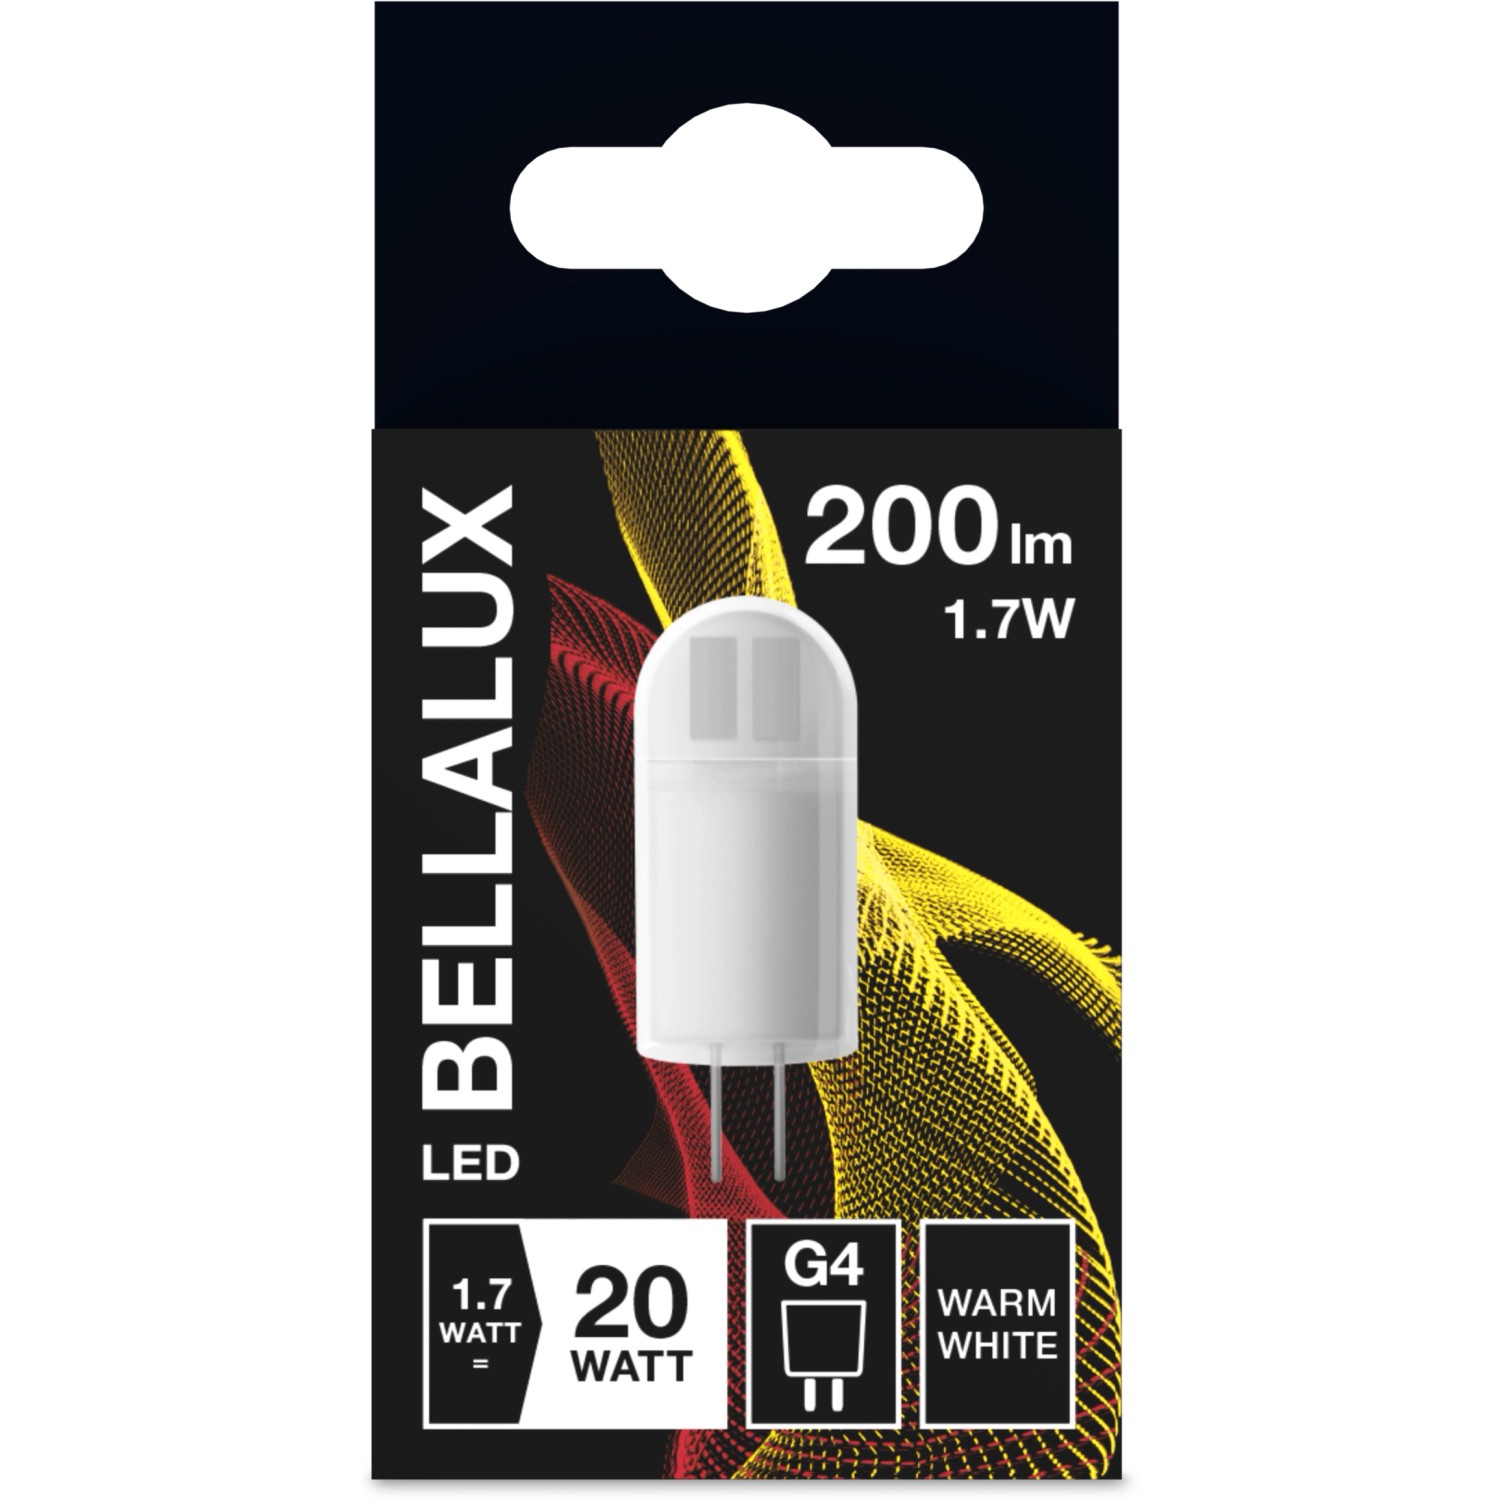 Bellalux LED-Leuchtmittel Pin G4 / 1,7 W (200 lm) Warmweiß